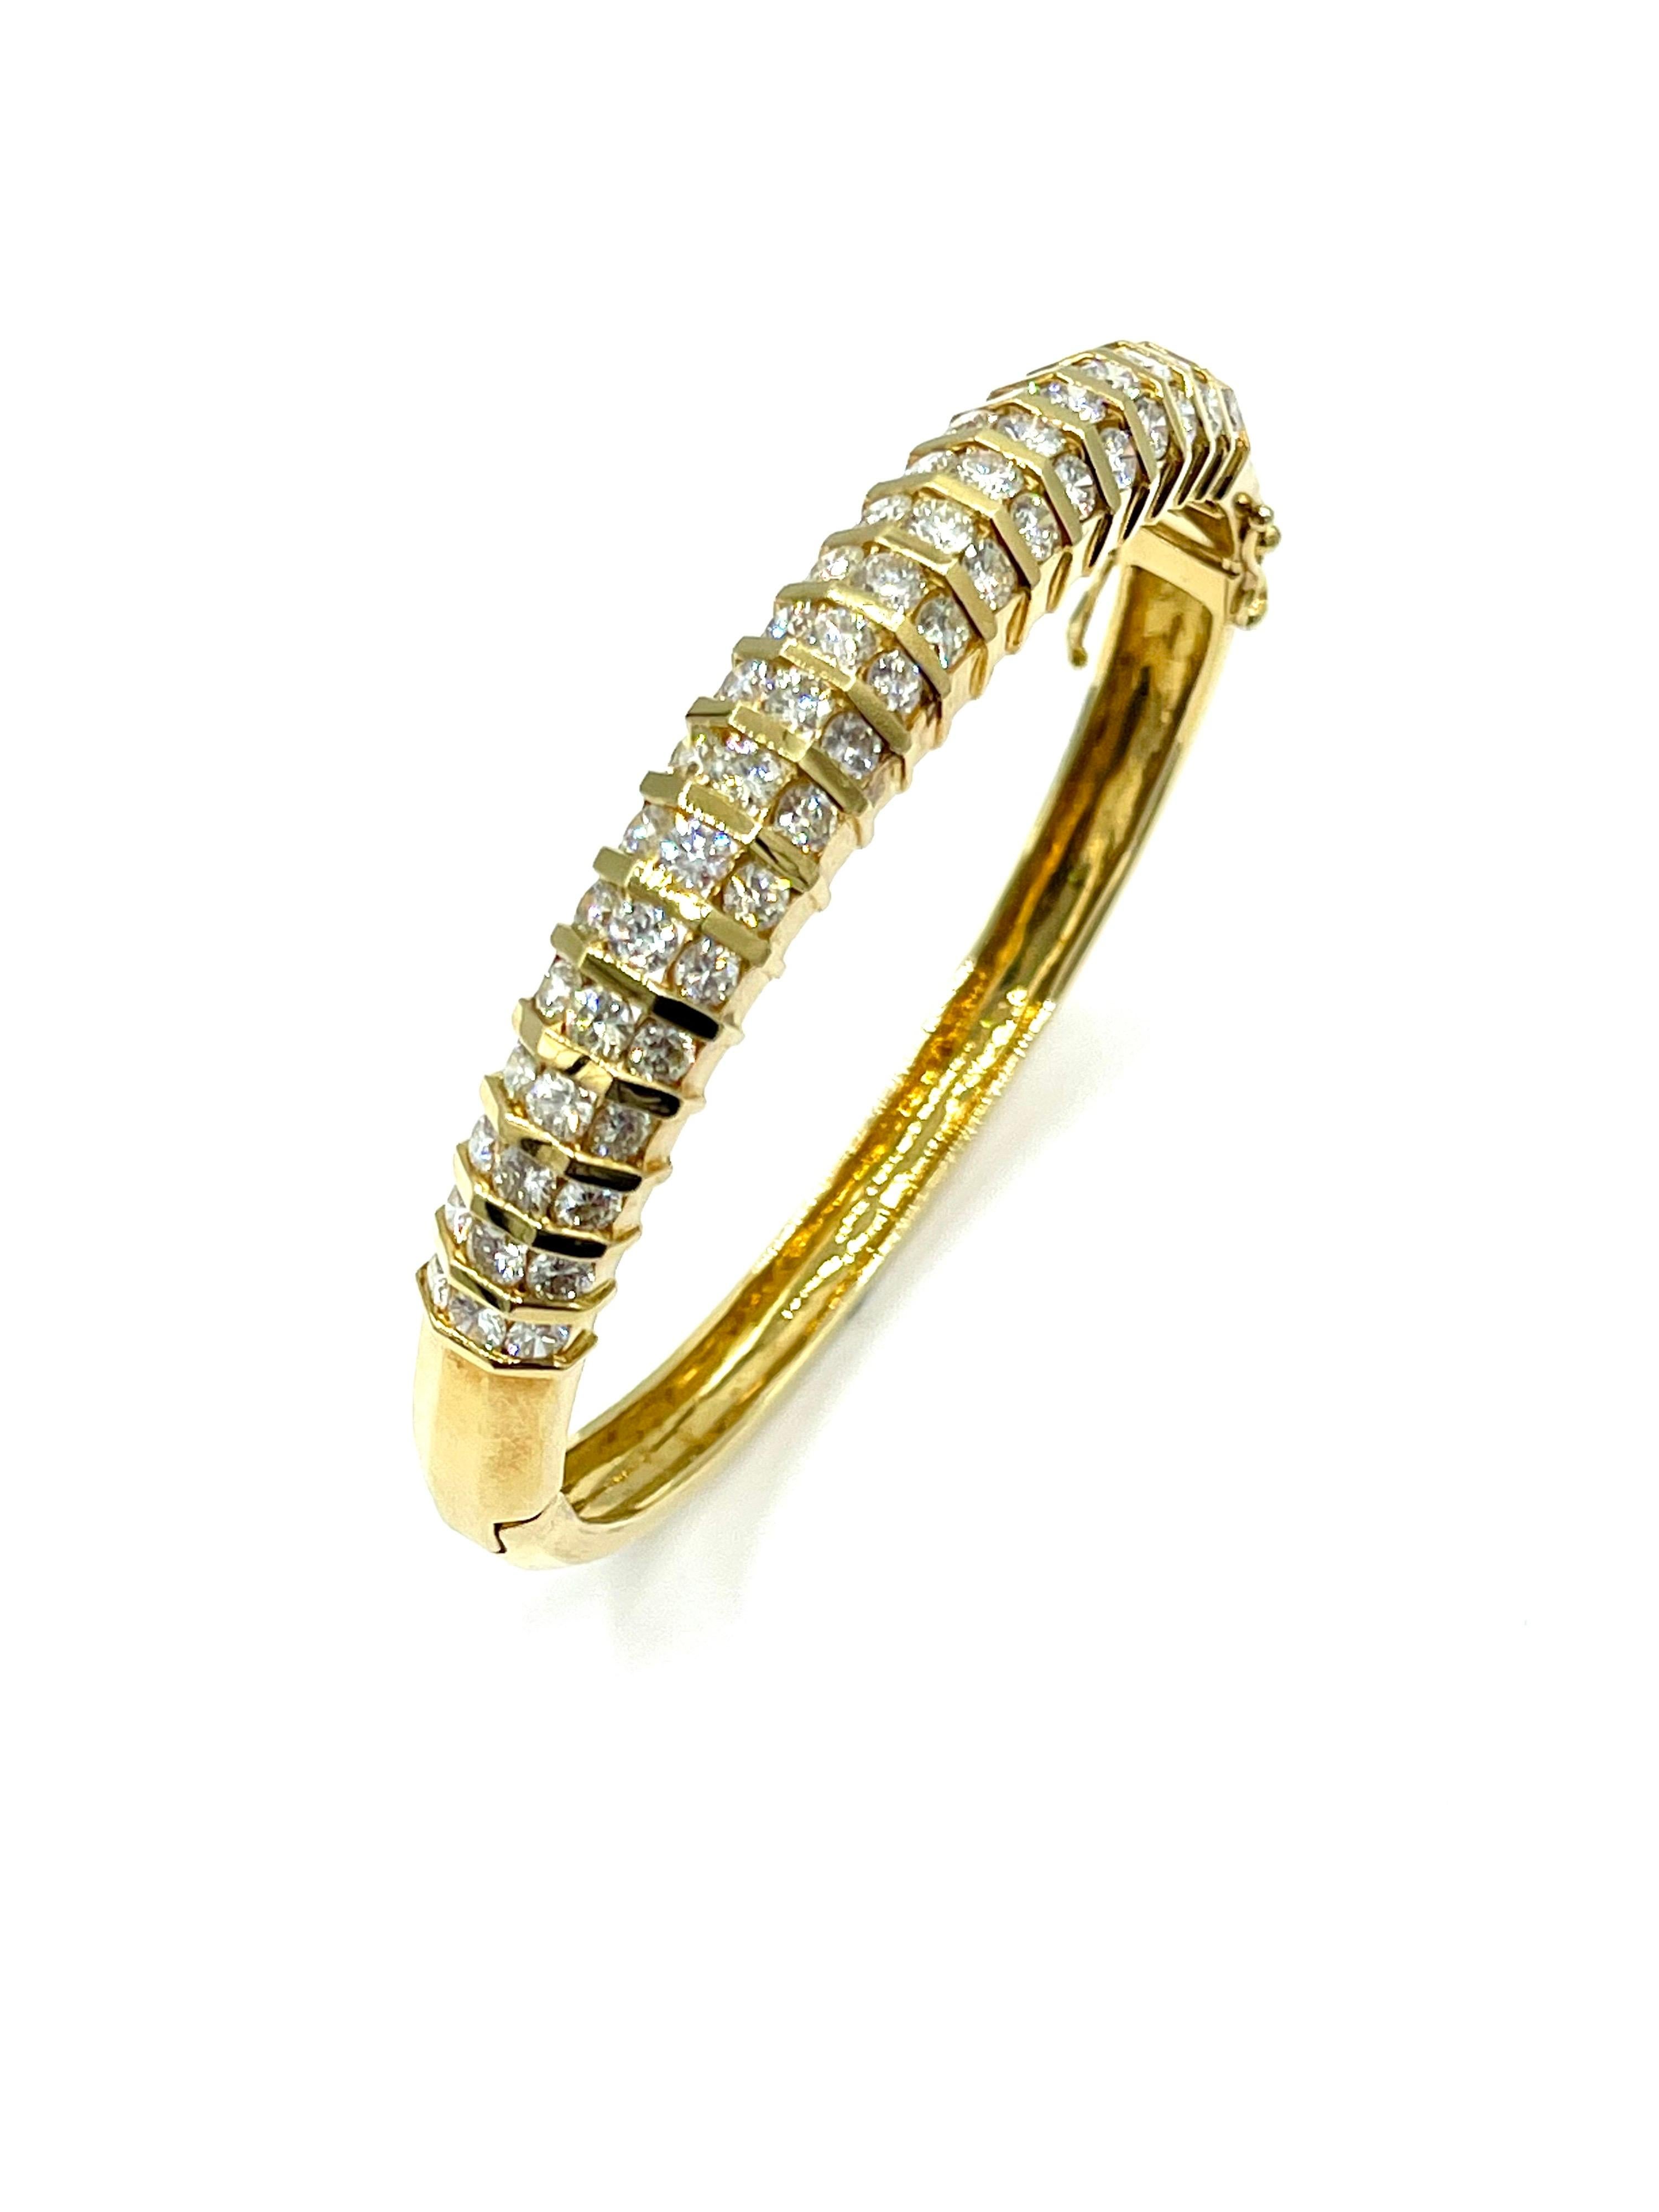 Il s'agit d'un magnifique bracelet bangle en diamants de style rétro !  Les 57 diamants ronds et brillants sont sertis sur des barres en or jaune 18 carats, pour un poids total de 5,32 carats.  Les diamants sont de couleur G-H et de pureté VS.  Ces